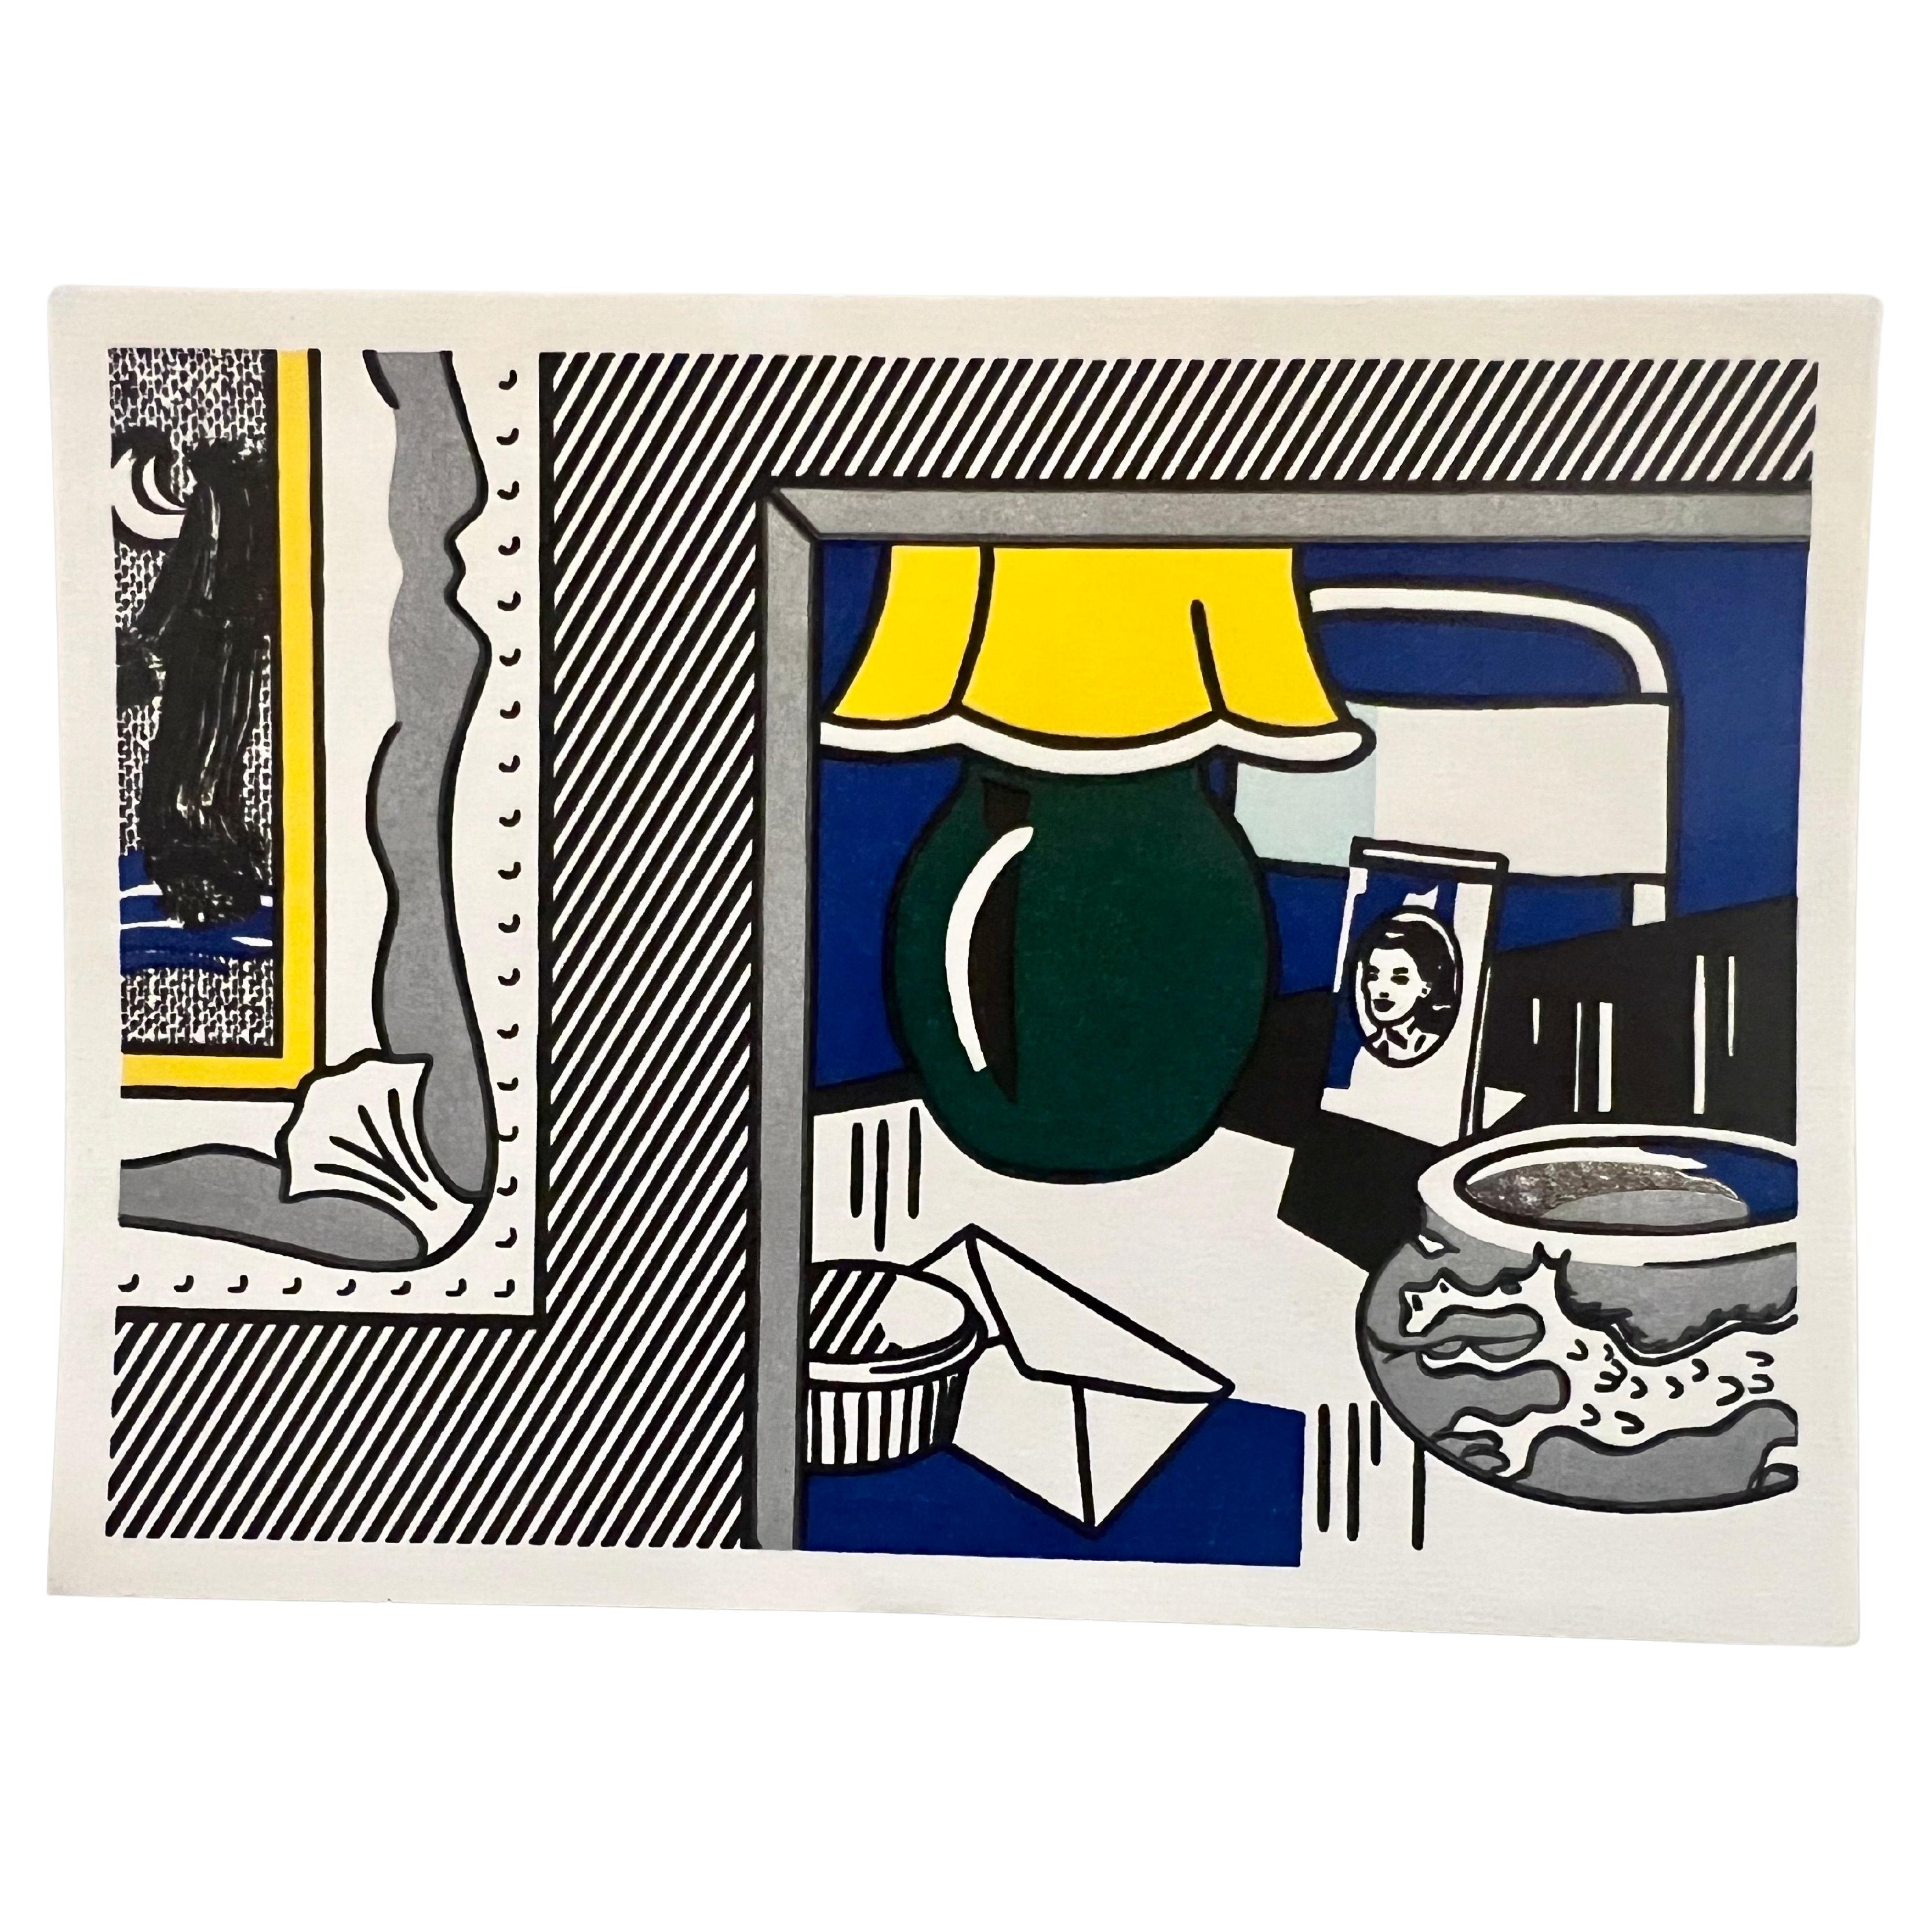 1984 Kleiner Holzschnitt-Lithographie-Raumteiler mit Siebdruck und Collage aus dem Nachlass von Roy Litchtenstein